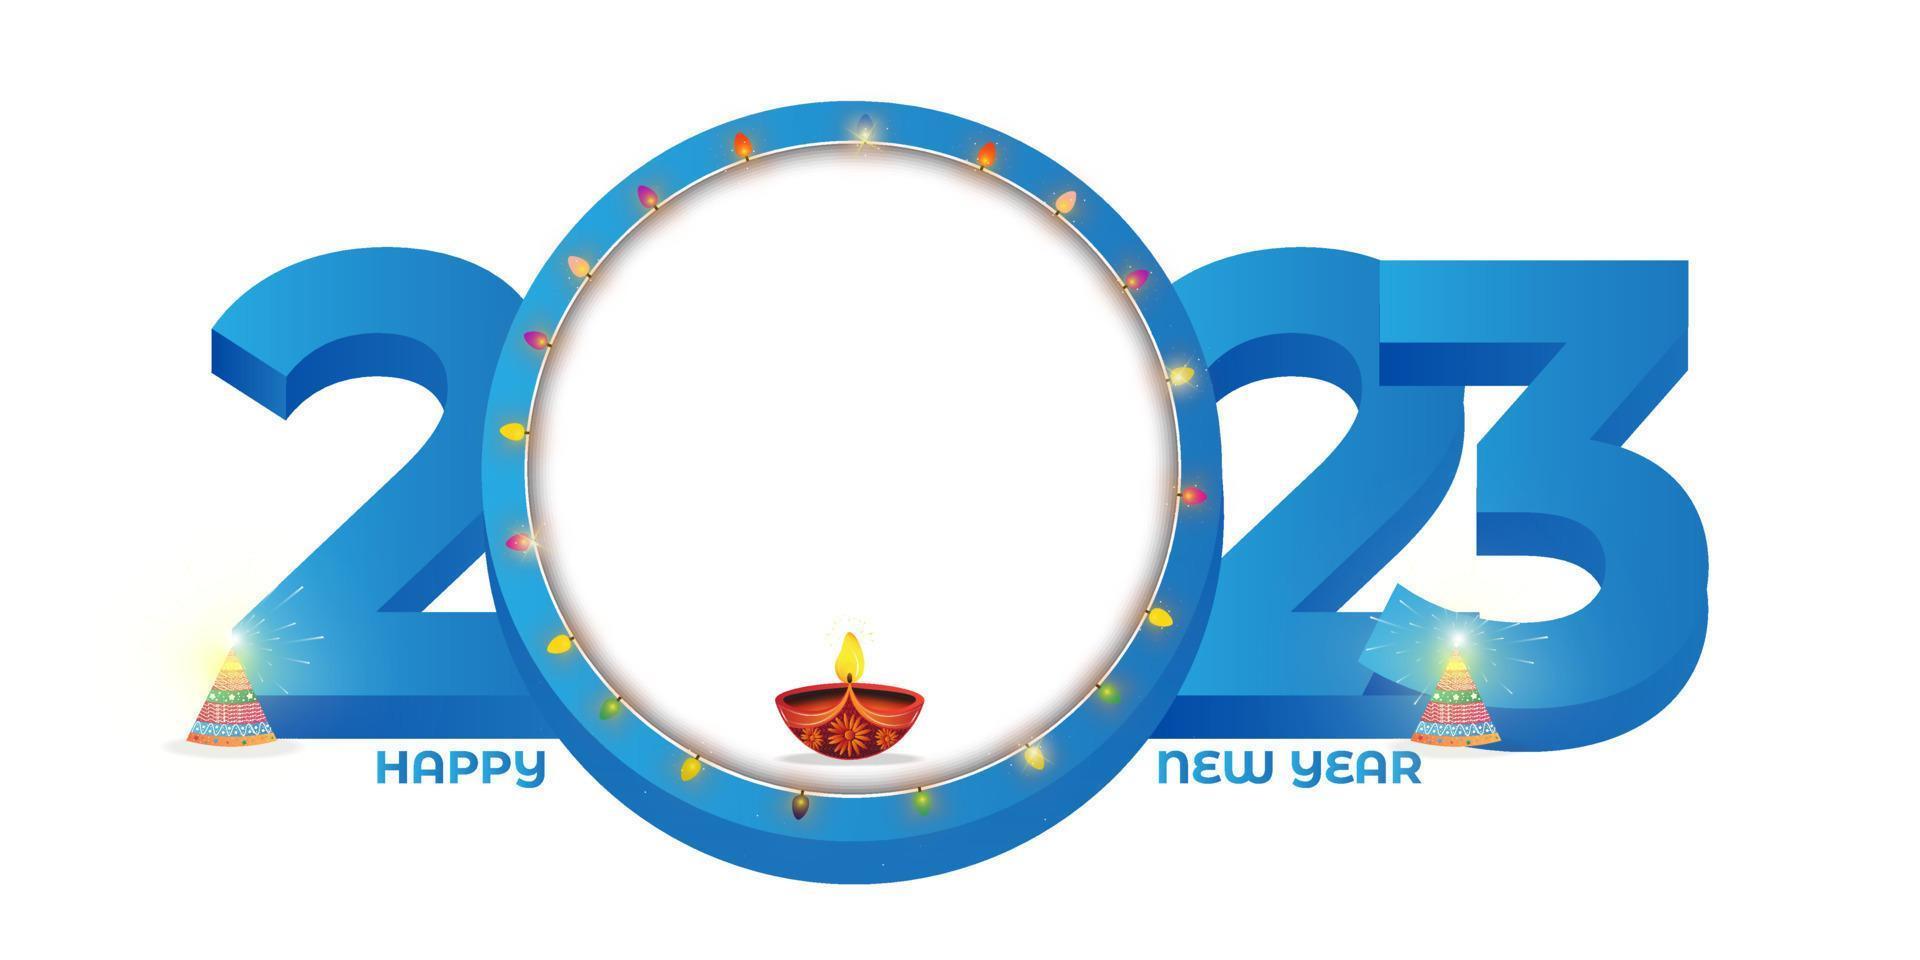 2023 Nouveau année fête sur blanc Contexte. Noël guirlande lumières décoration dans grand cercle avec fleur pot biscuit salé et pétrole lampe 2023 texte. vecteur illustration.